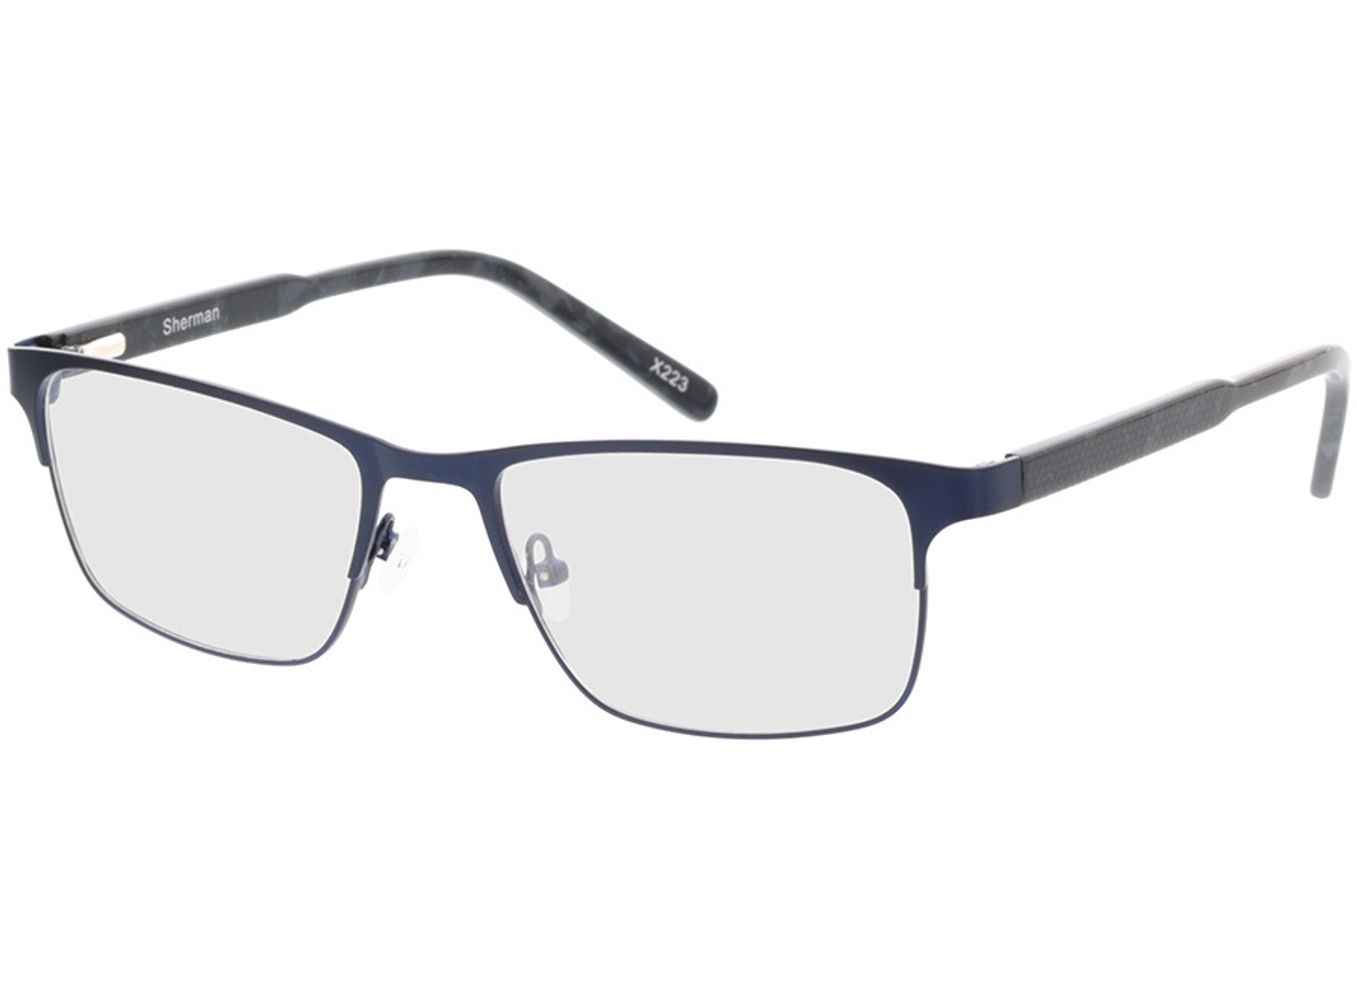 Sherman - blau/grau meliert Brillengestell inkl. Gläser, Vollrand, Rechteckig von Brille24 Collection